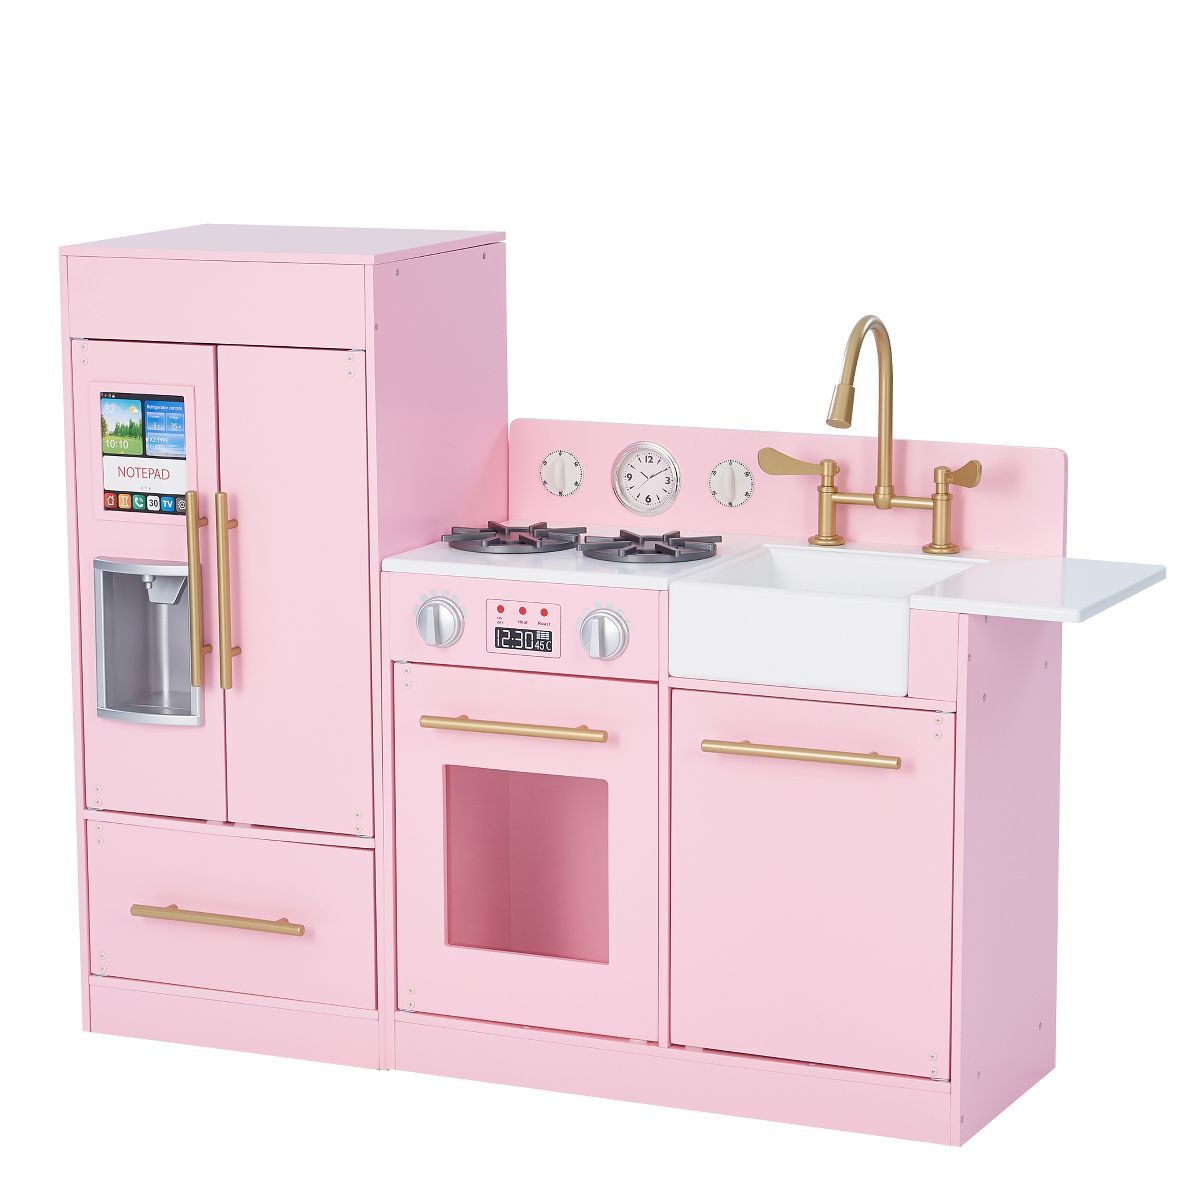 Teamson Kids Little Chef Charlotte 2-Piece Modular Wooden Play Kitchen, Pink | Target